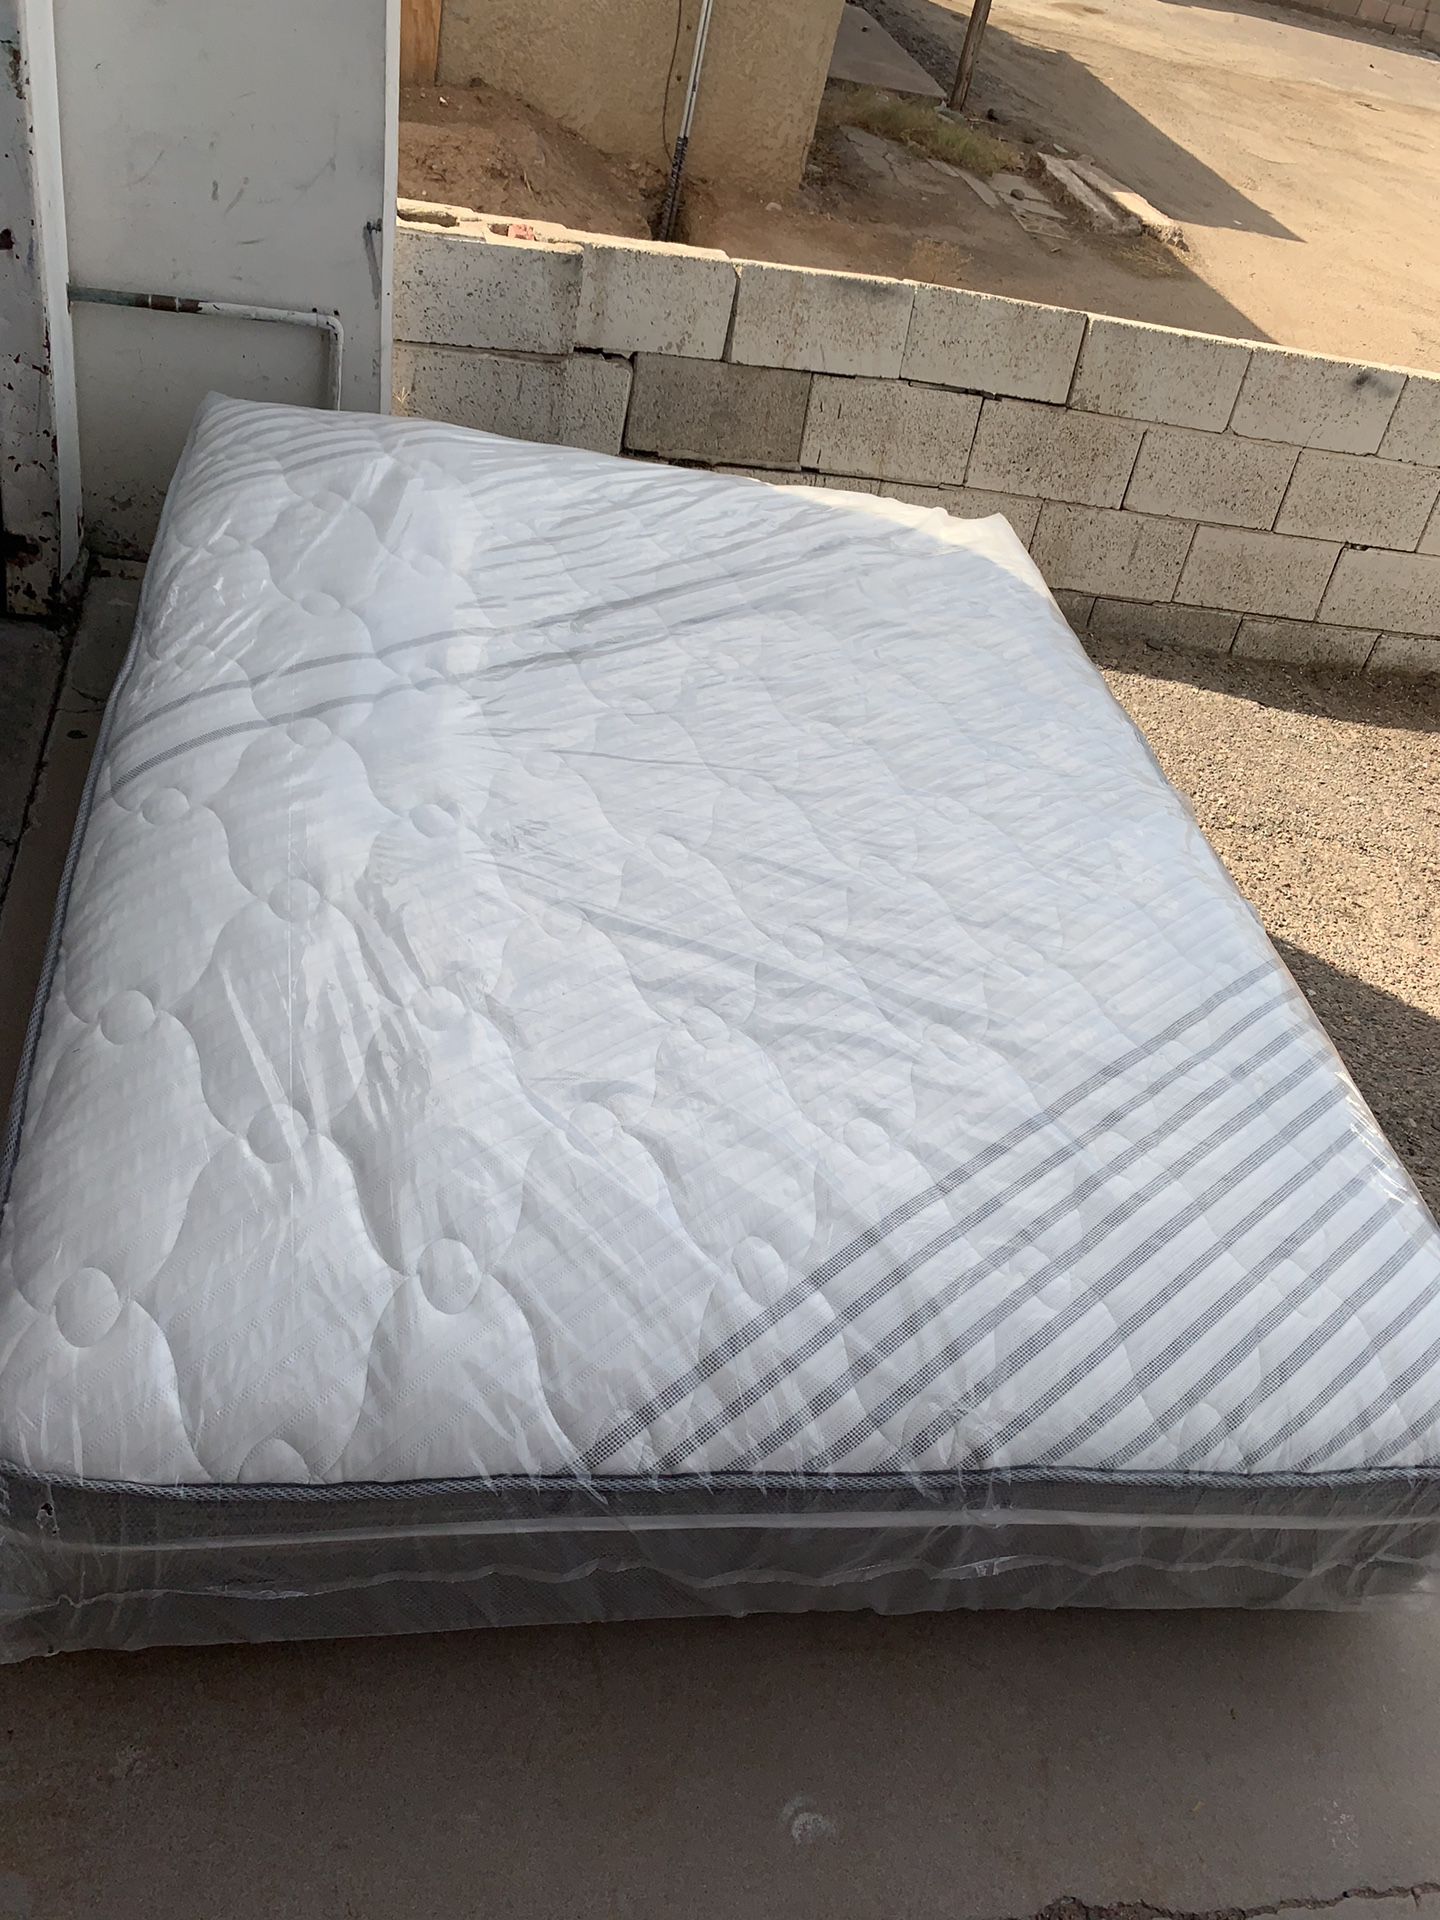 Brand new queen size pillow top mattress